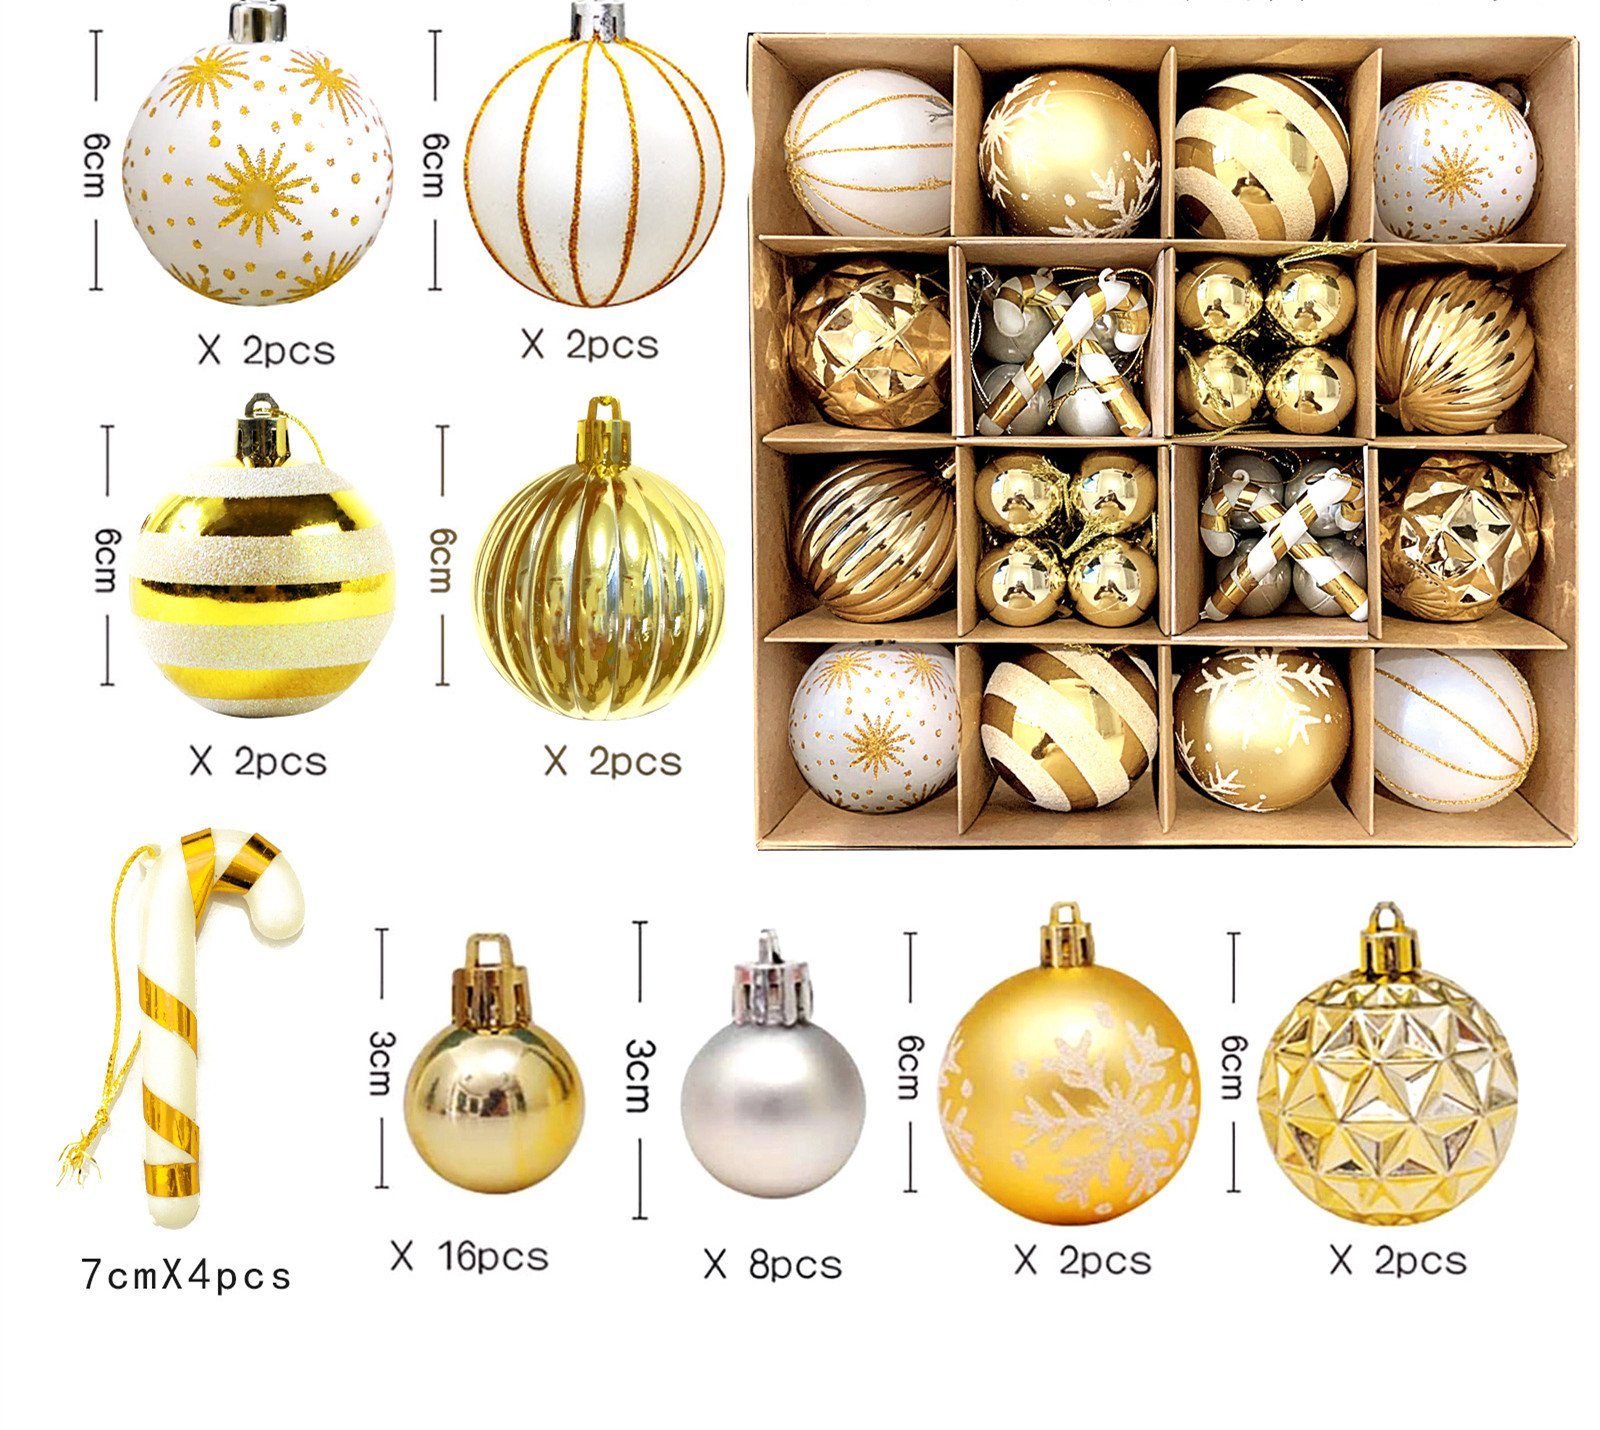 XDeer Weihnachtsbaumkugel Weihnachtskugeln Set, Christbaumkugeln Deko Weihnachten, Weihnachtsbaumschmuck,Weihnachtsbaumkugeln white+gold